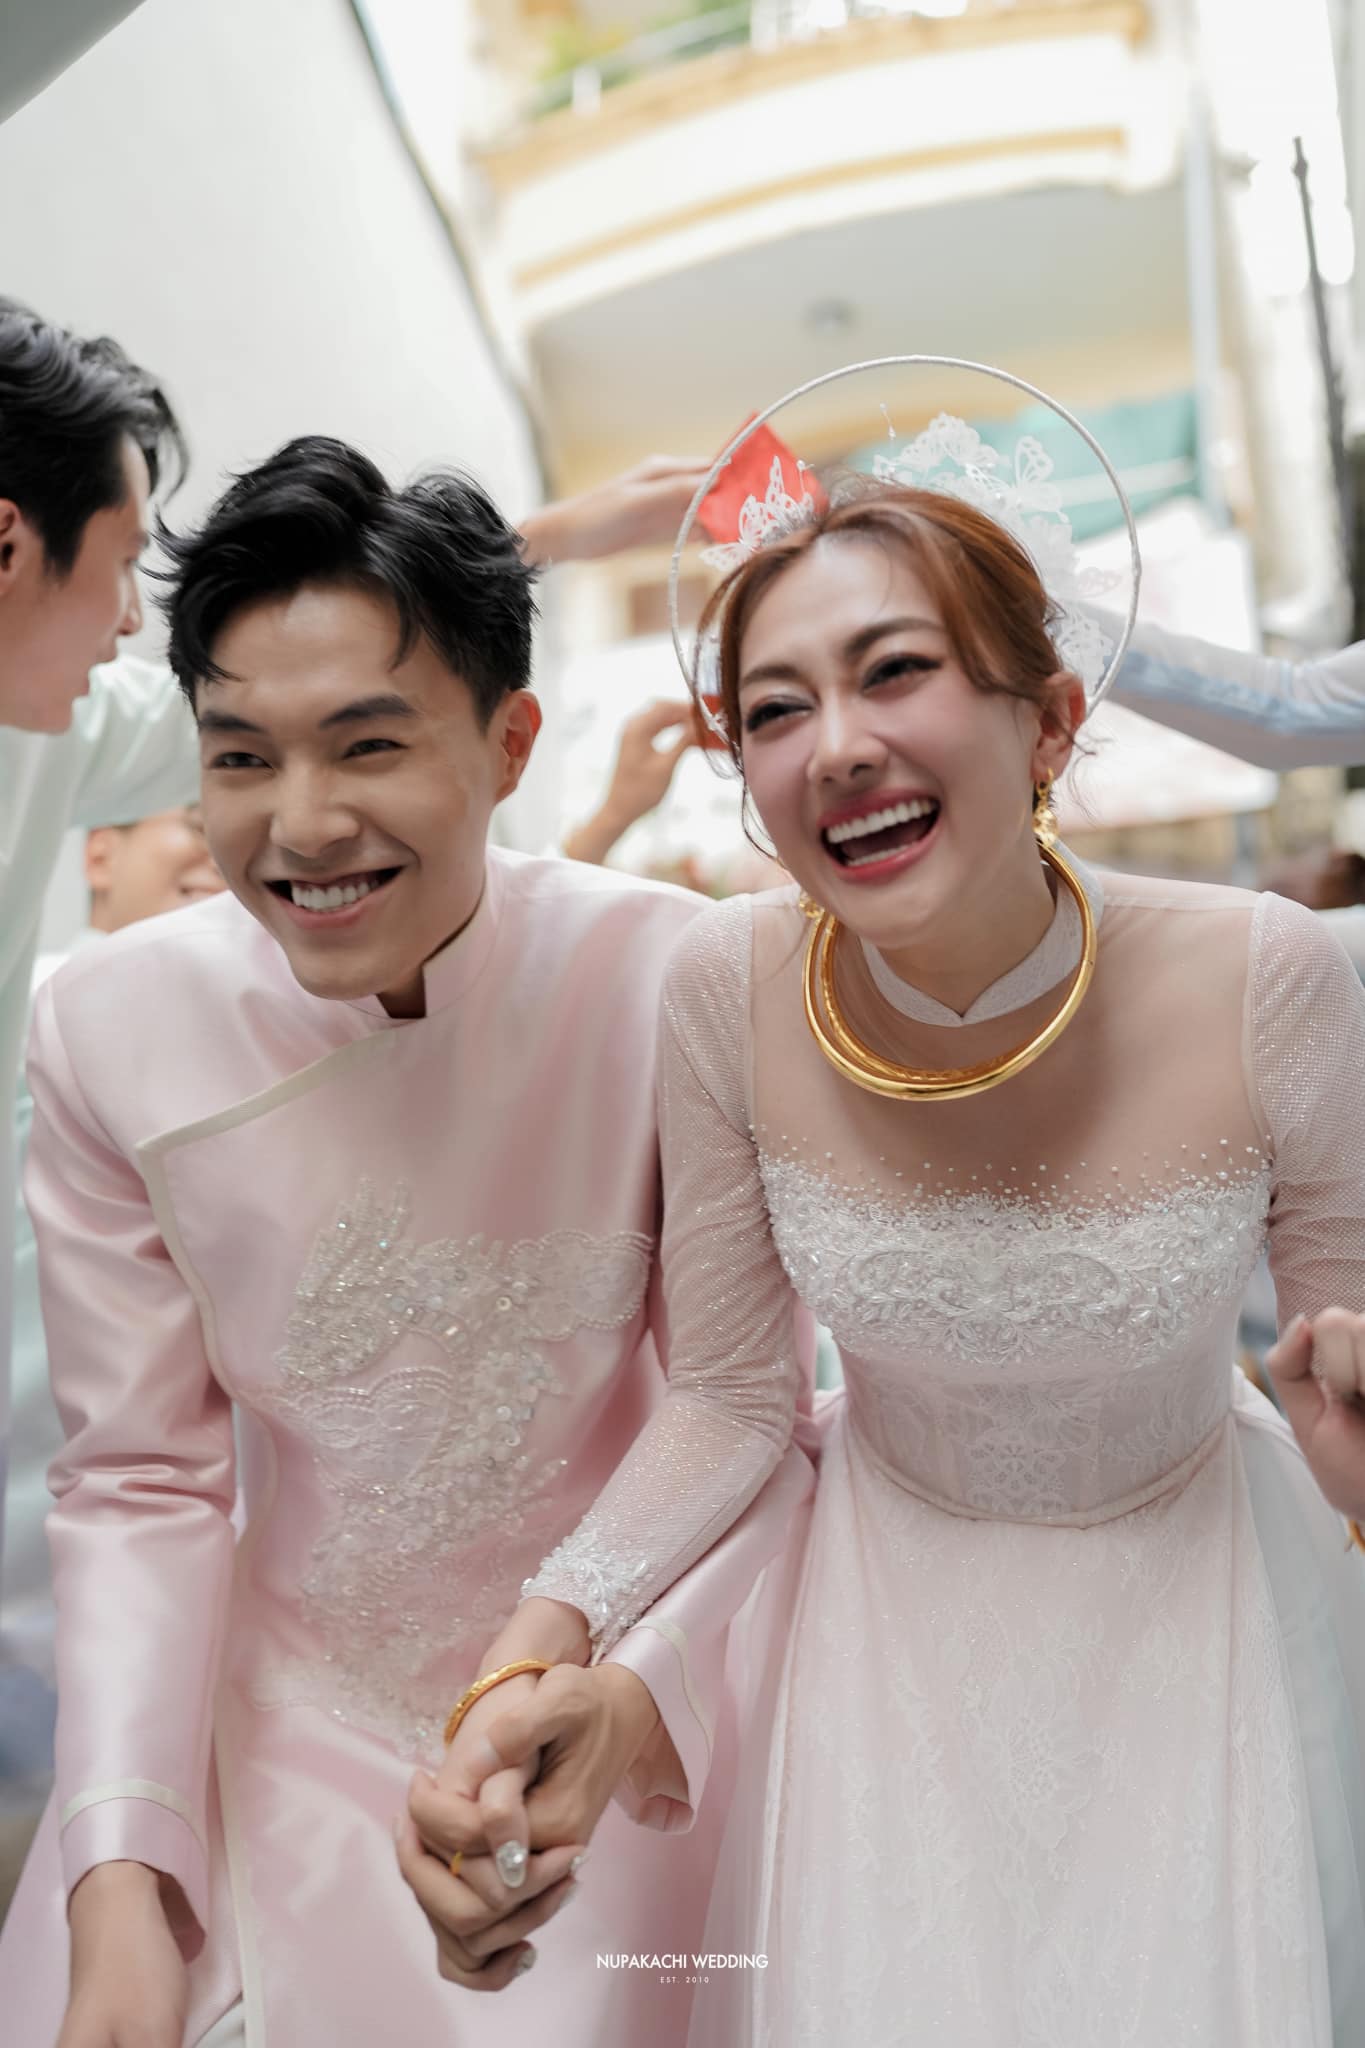 Diễn viên Phương Lan và Phan Đạt tiếp tục tổ chức đám cưới ở Ninh Bình, thời gian khi nào? - ảnh 6